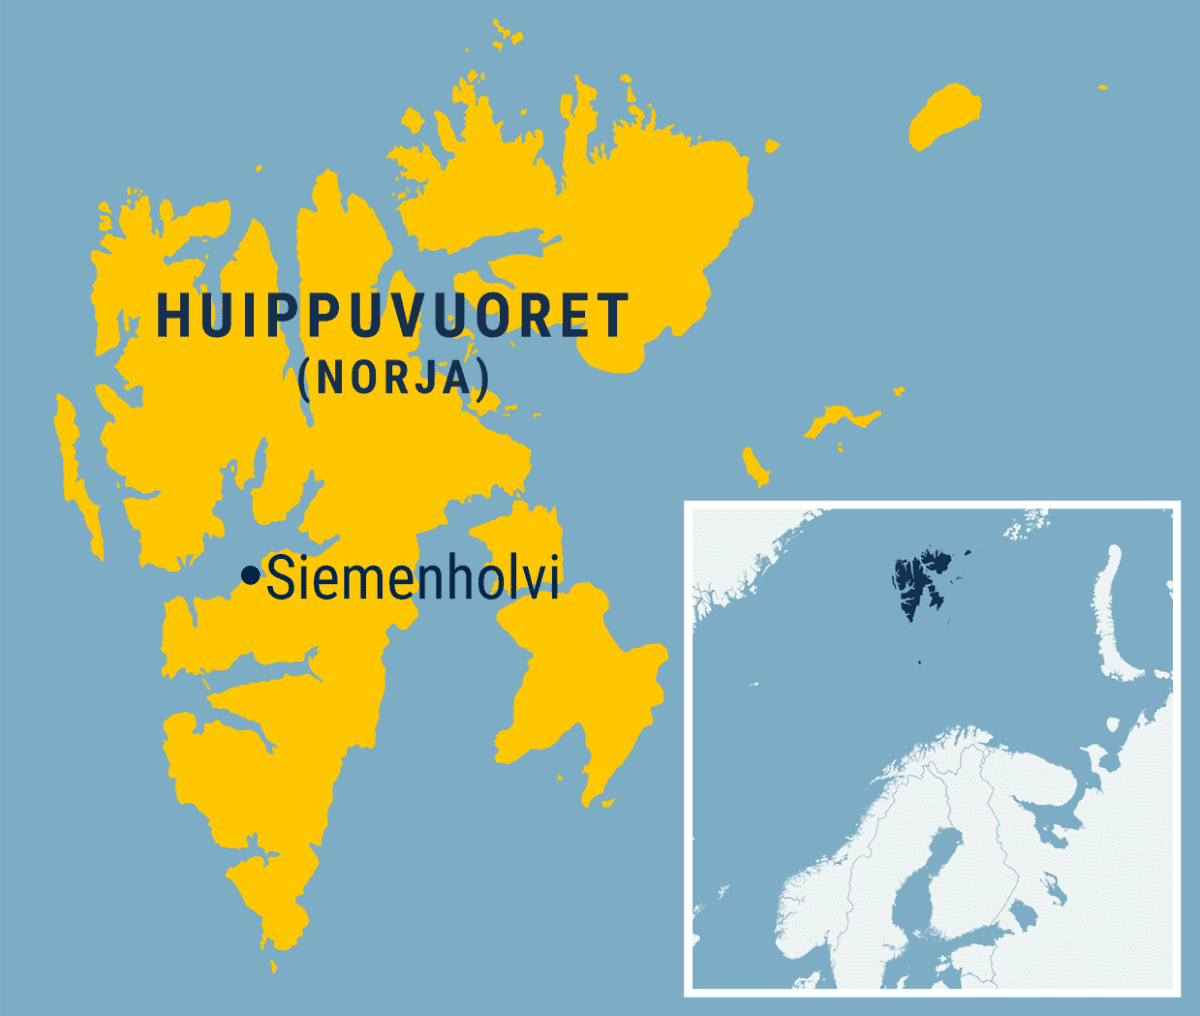 Kartta Siemenholvin sijainnista Huippuvuorilla.